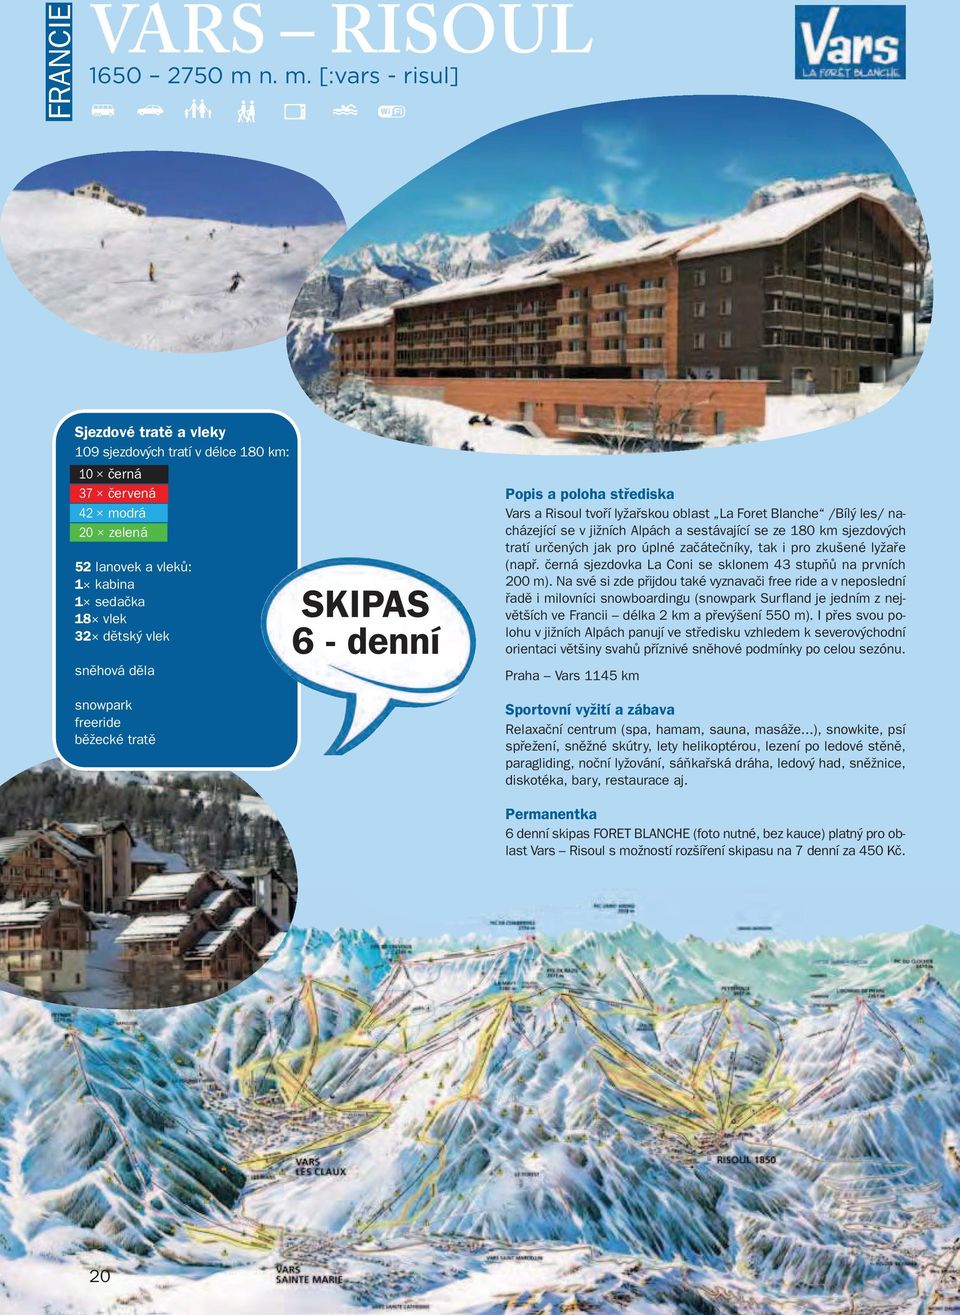 snowpark freeride běžecké tratě SKIPAS 6 denní Popis apoloha střediska Vars a Risoul tvoří lyžařskou oblast La Foret Blanche /Bílý les/ nacházející se v jižních Alpách a sestávající se ze 180 km